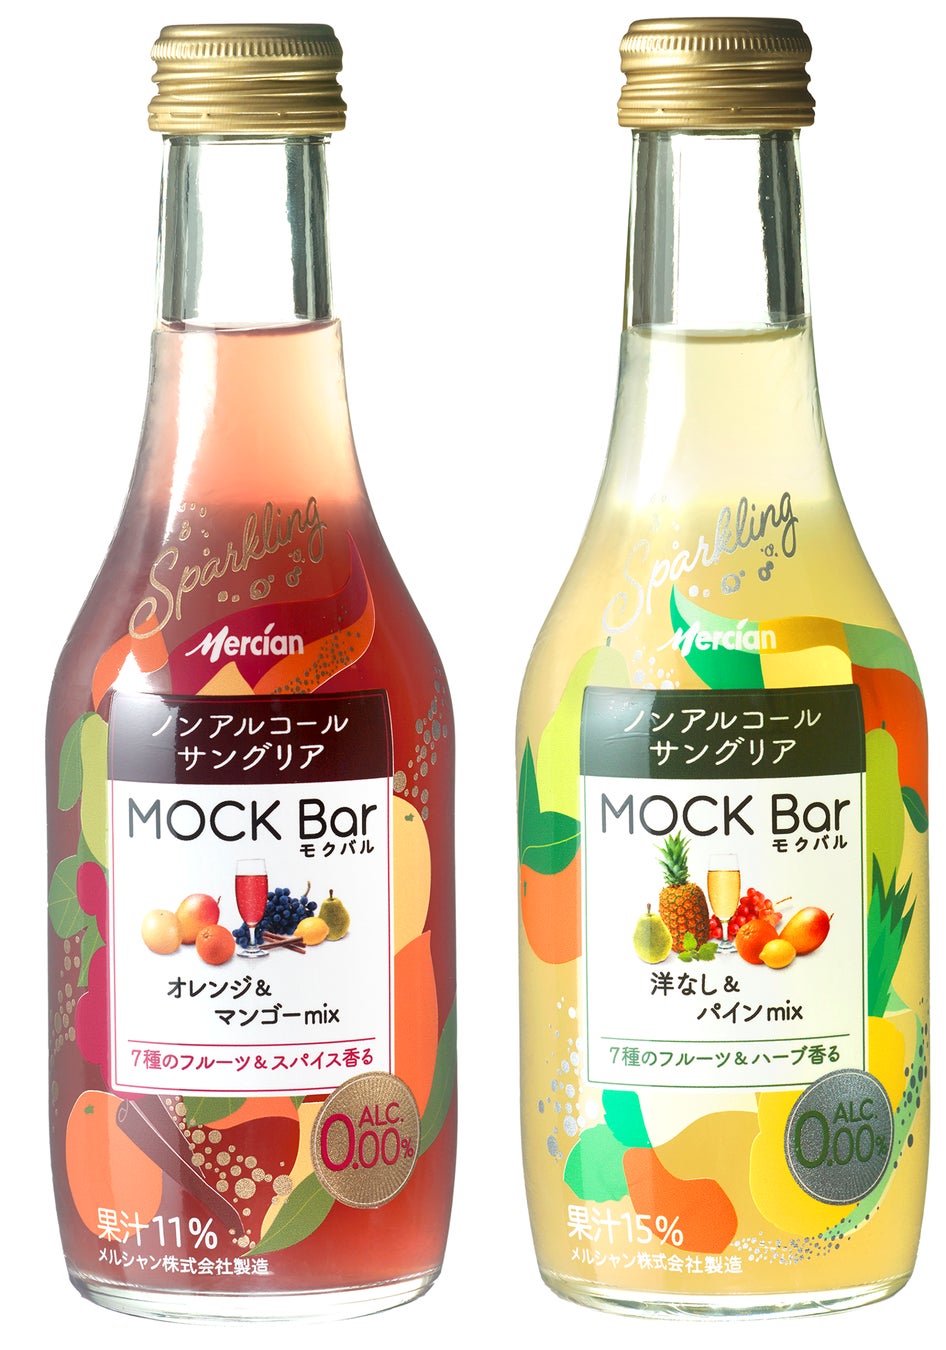 「ワインならでは」の余韻が楽しめるノンアルコールサングリア「MOCK Bar(モクバル)」シリーズより“サングリアらしい味わい”にリニューアル！